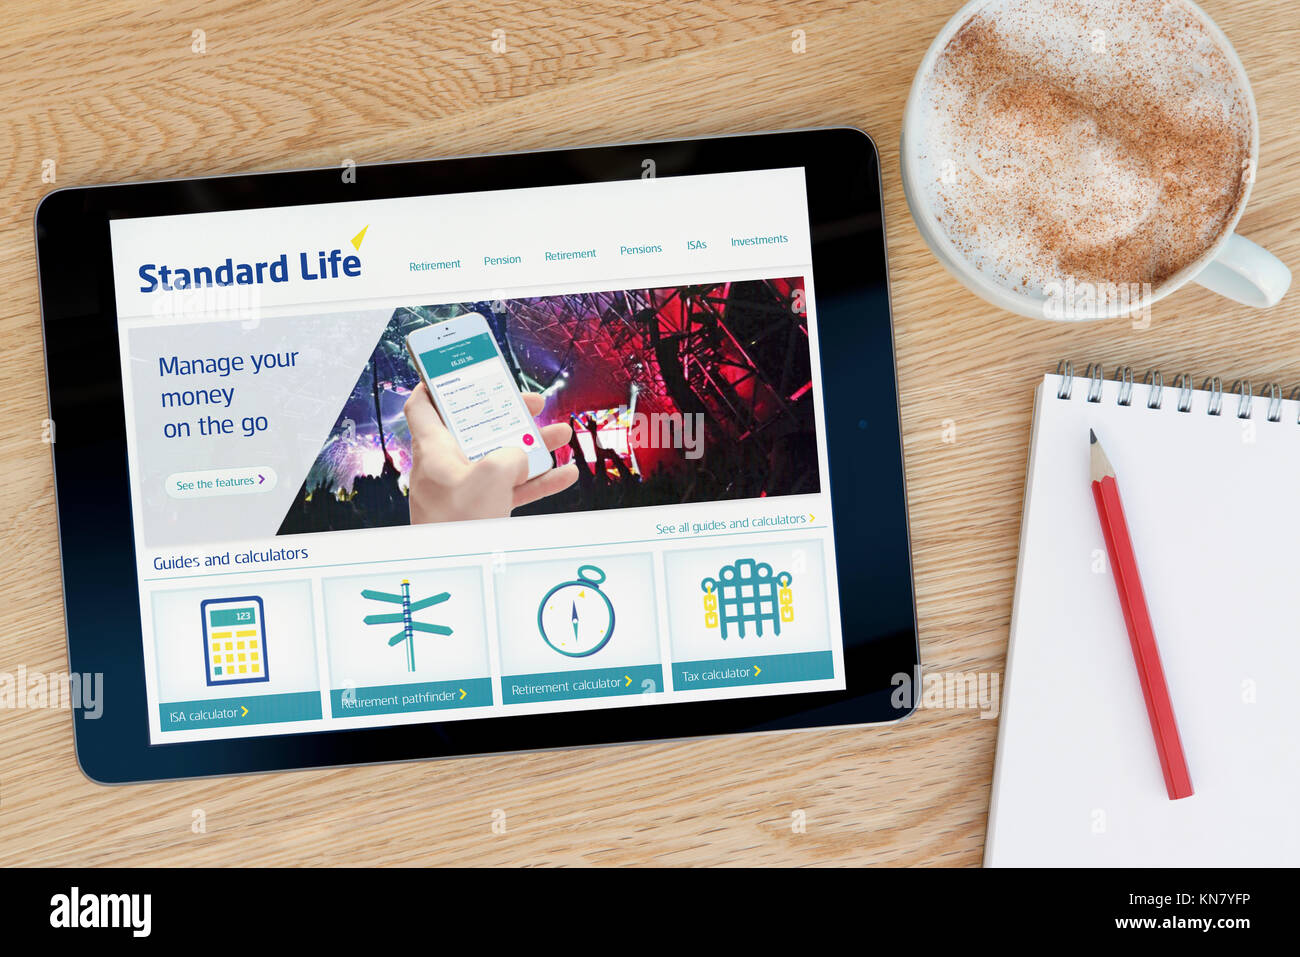 Die Standard Life-Website auf einem iPad Tablet Gerät, das auf einem Tisch liegt neben einem Notizblock und Bleistift und eine Tasse Kaffee (nur redaktionell) Stockfoto